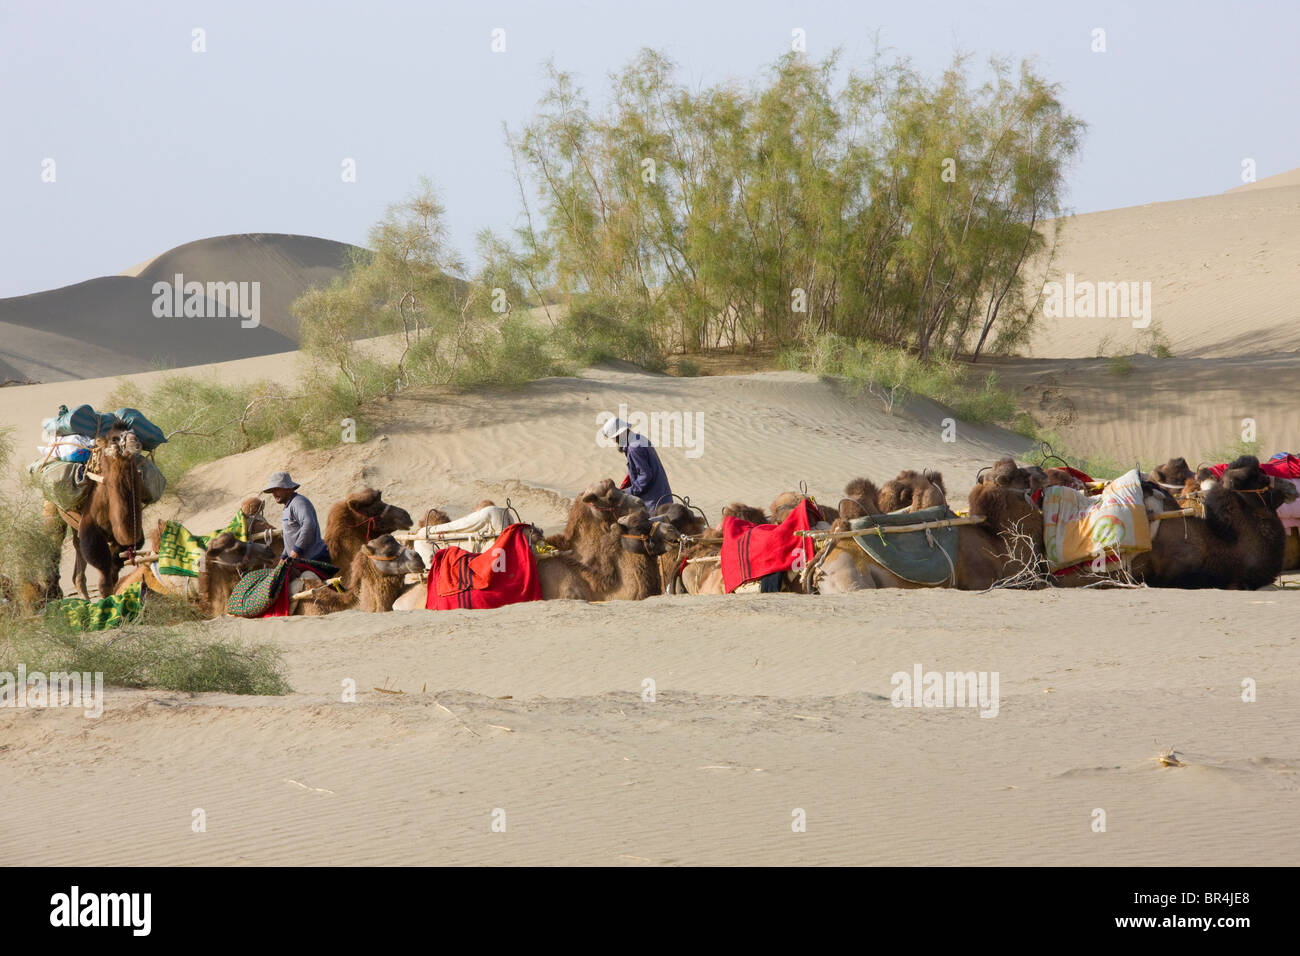 Tourist camel caravan in the desert, Aksu, Xinjiang, China Stock Photo